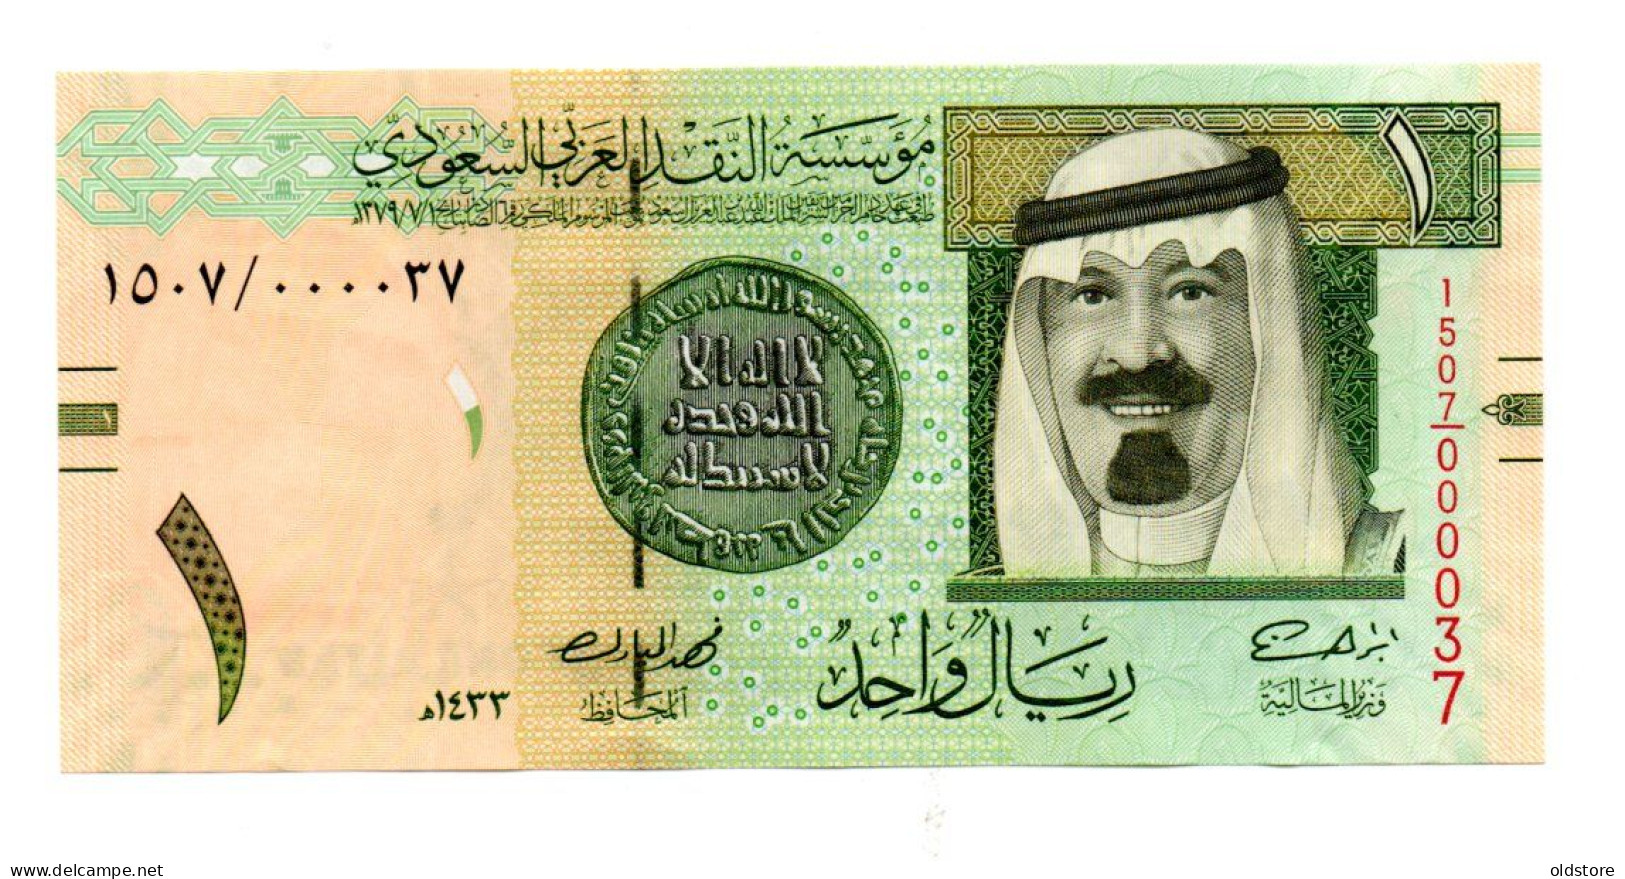 Saudi Arabia Banknotes - One Riyal 2012 Low Serial Number ( 000037 ) - UNC - Arabia Saudita